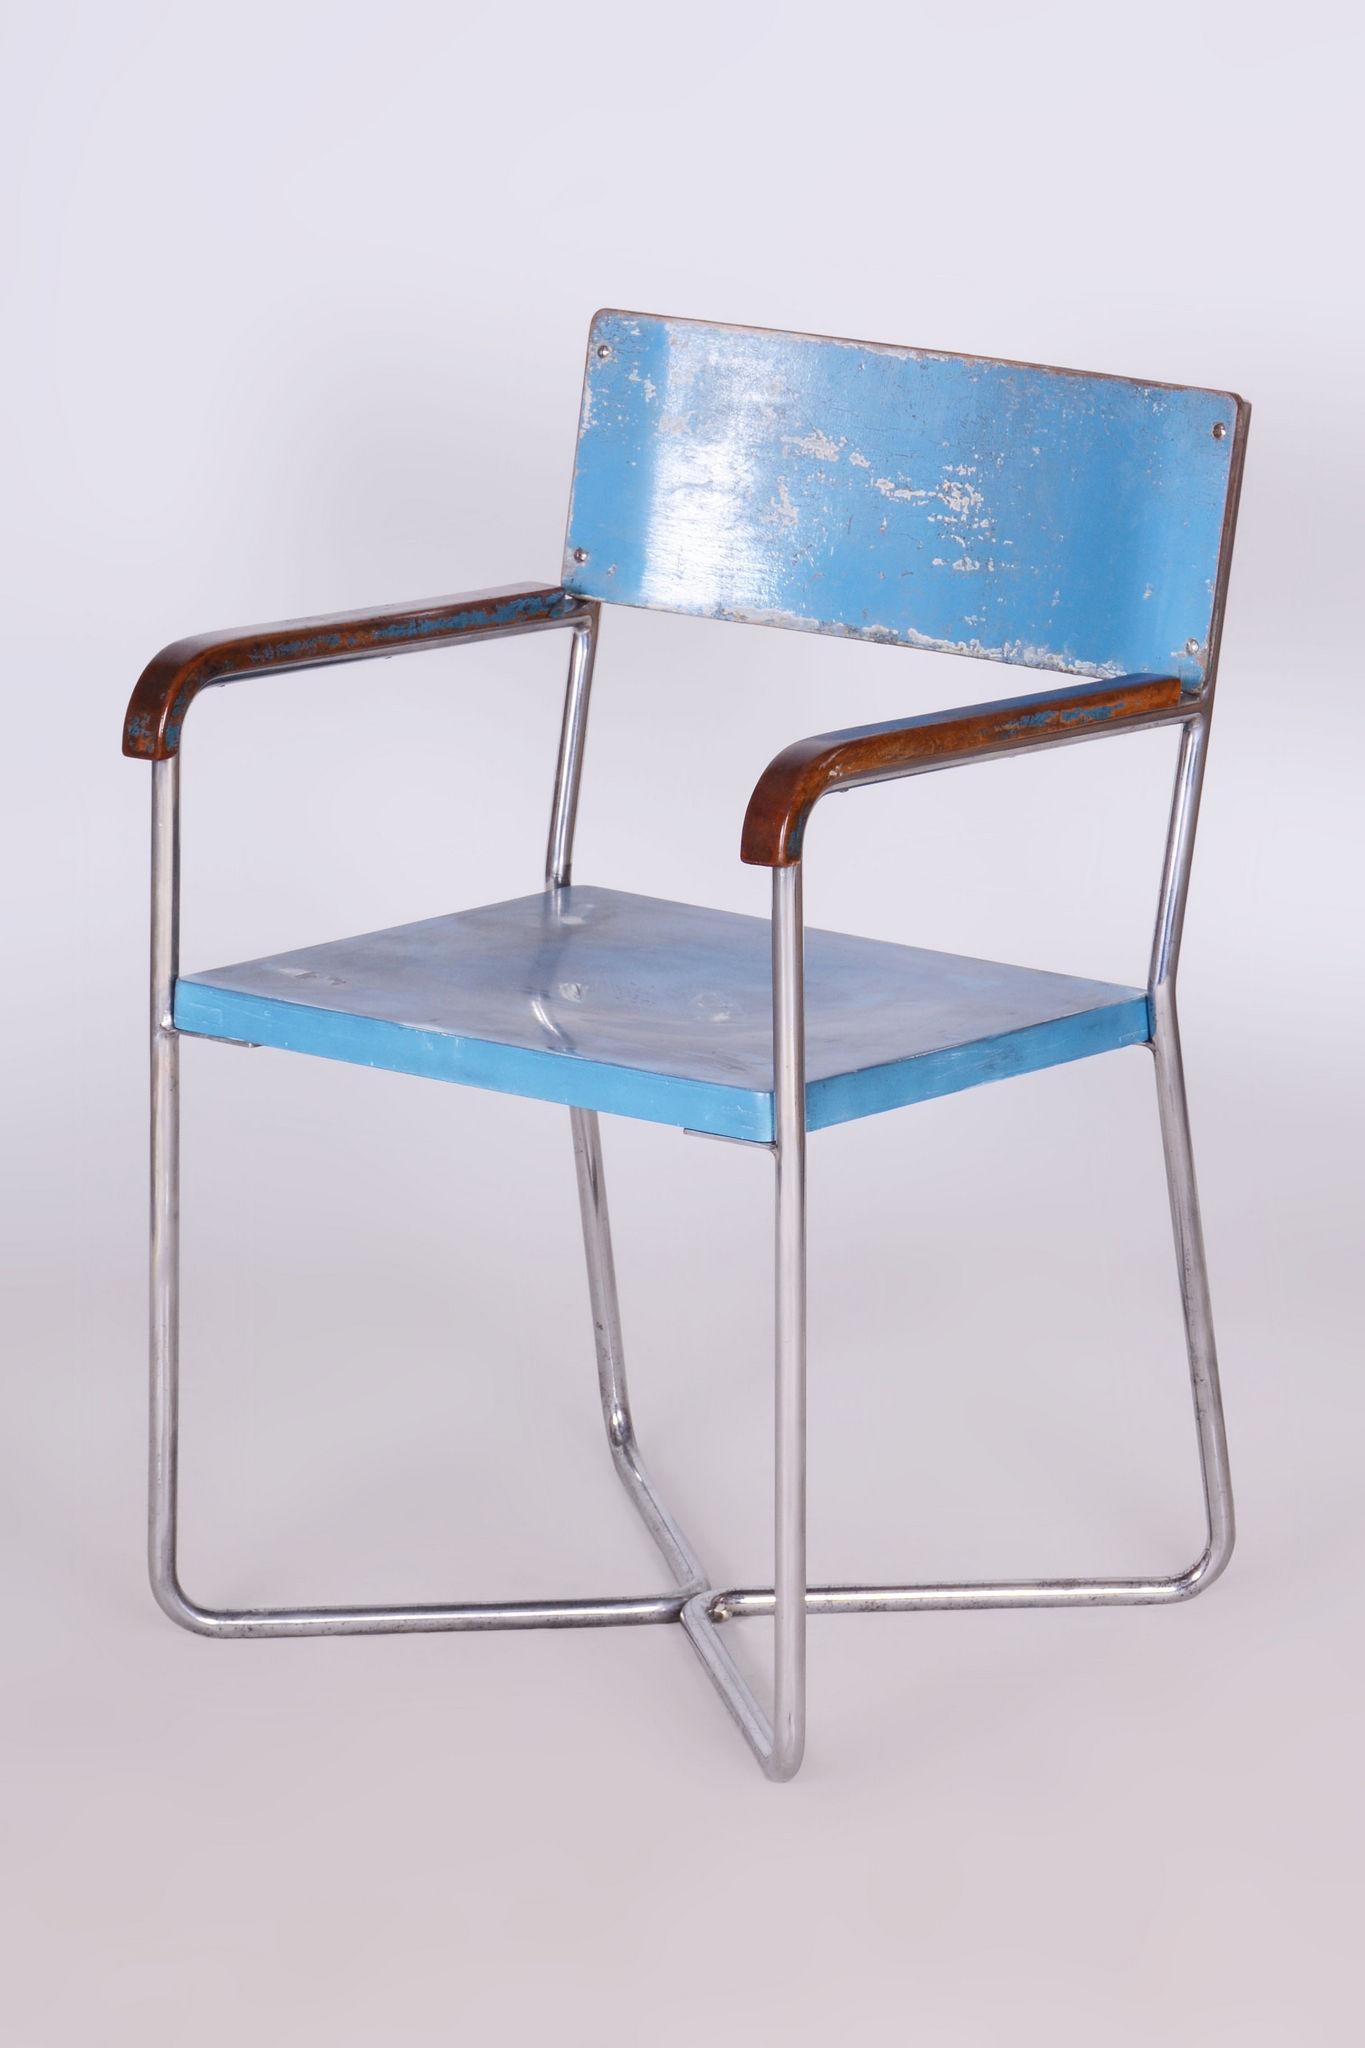 Fabriqué par Mücke Steele, un influent fabricant de meubles modernistes spécialisé dans les conceptions en acier tubulaire. 

En parfait état d'origine, l'objet a été nettoyé par des professionnels et son éclat a été ravivé par notre équipe de